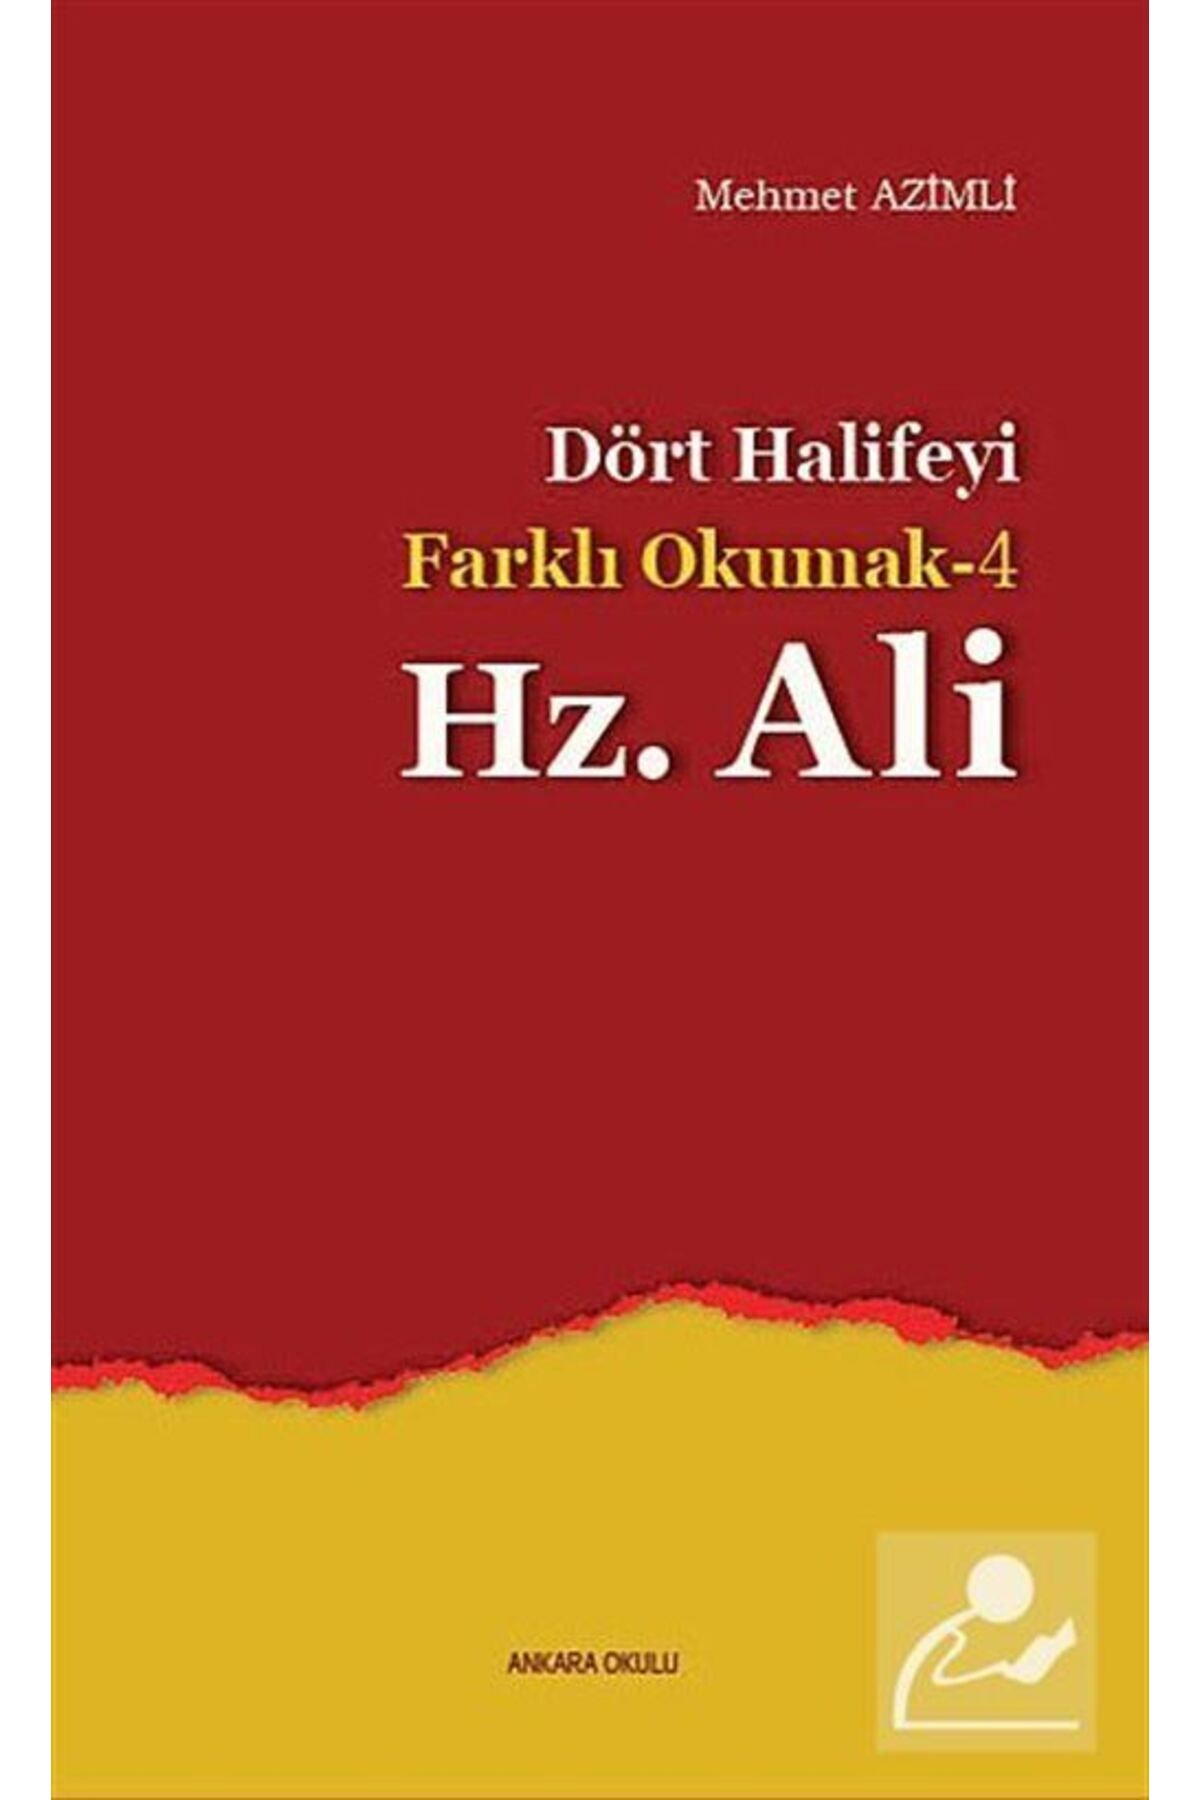 Ankara Okulu Yayınları Dört Halifeyi Farklı Okumak -4 Hz. Ali